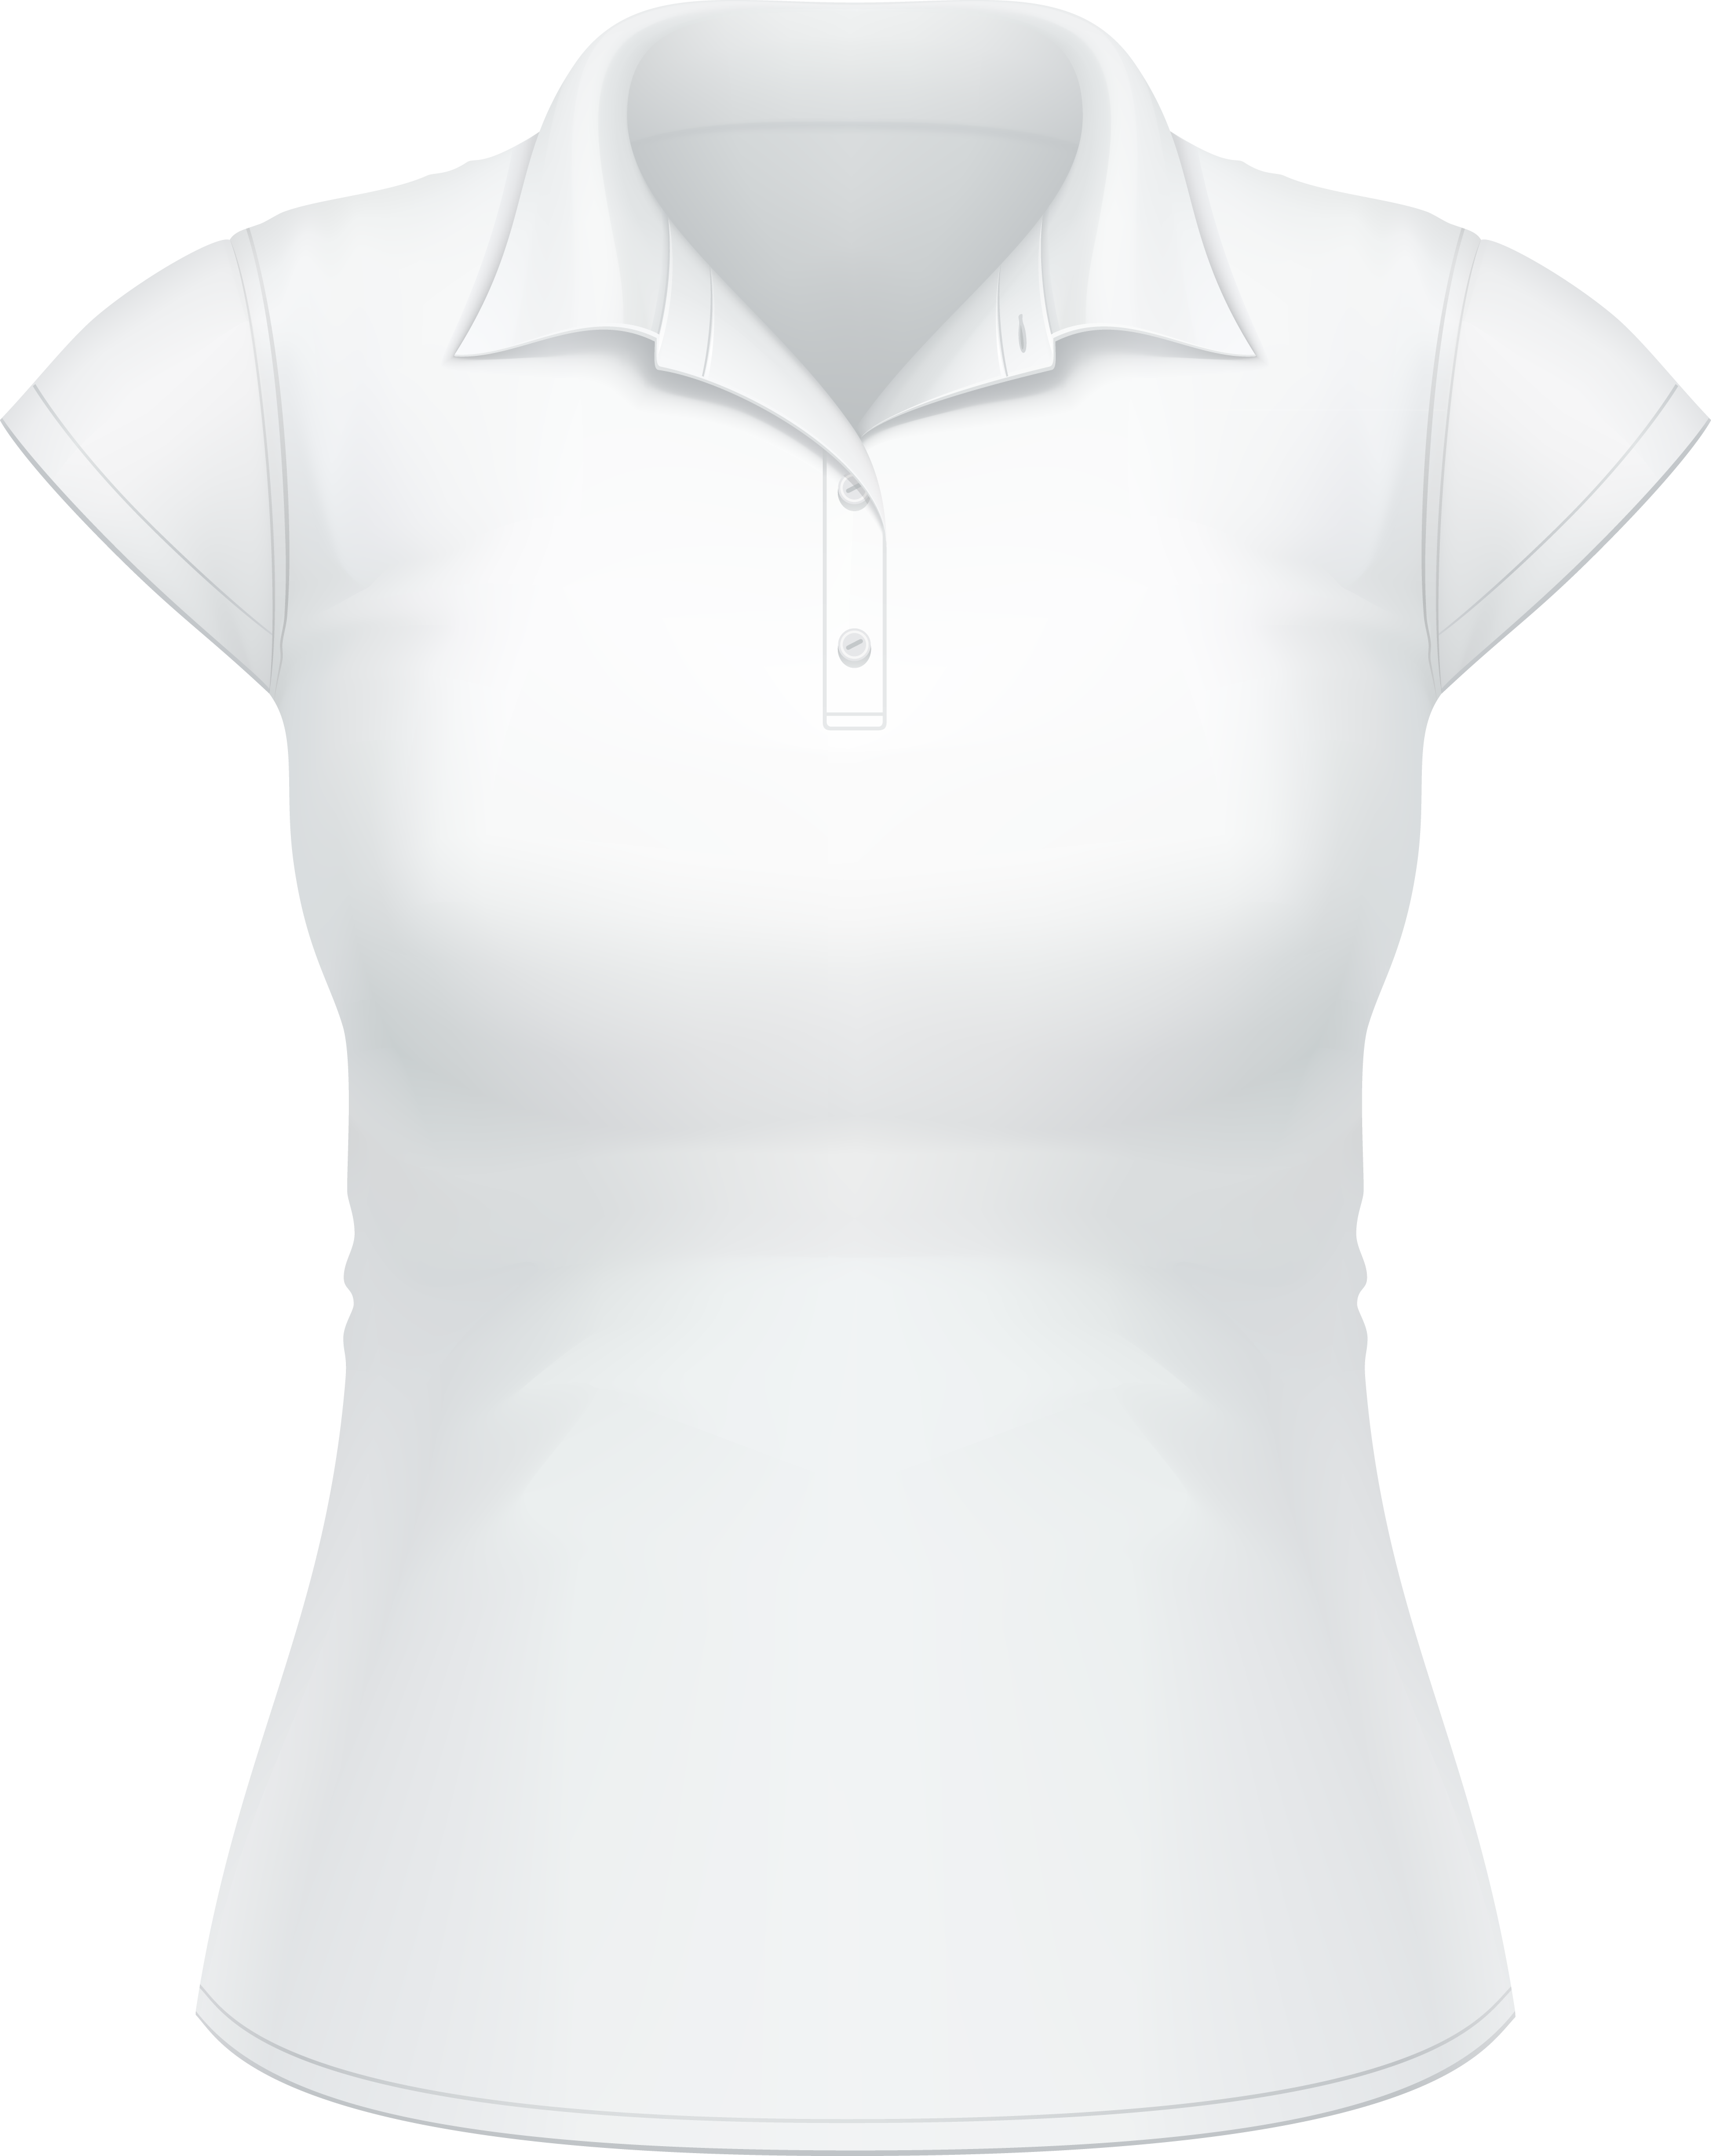 PLAIN White T Shirt PNG - ClipArt Best